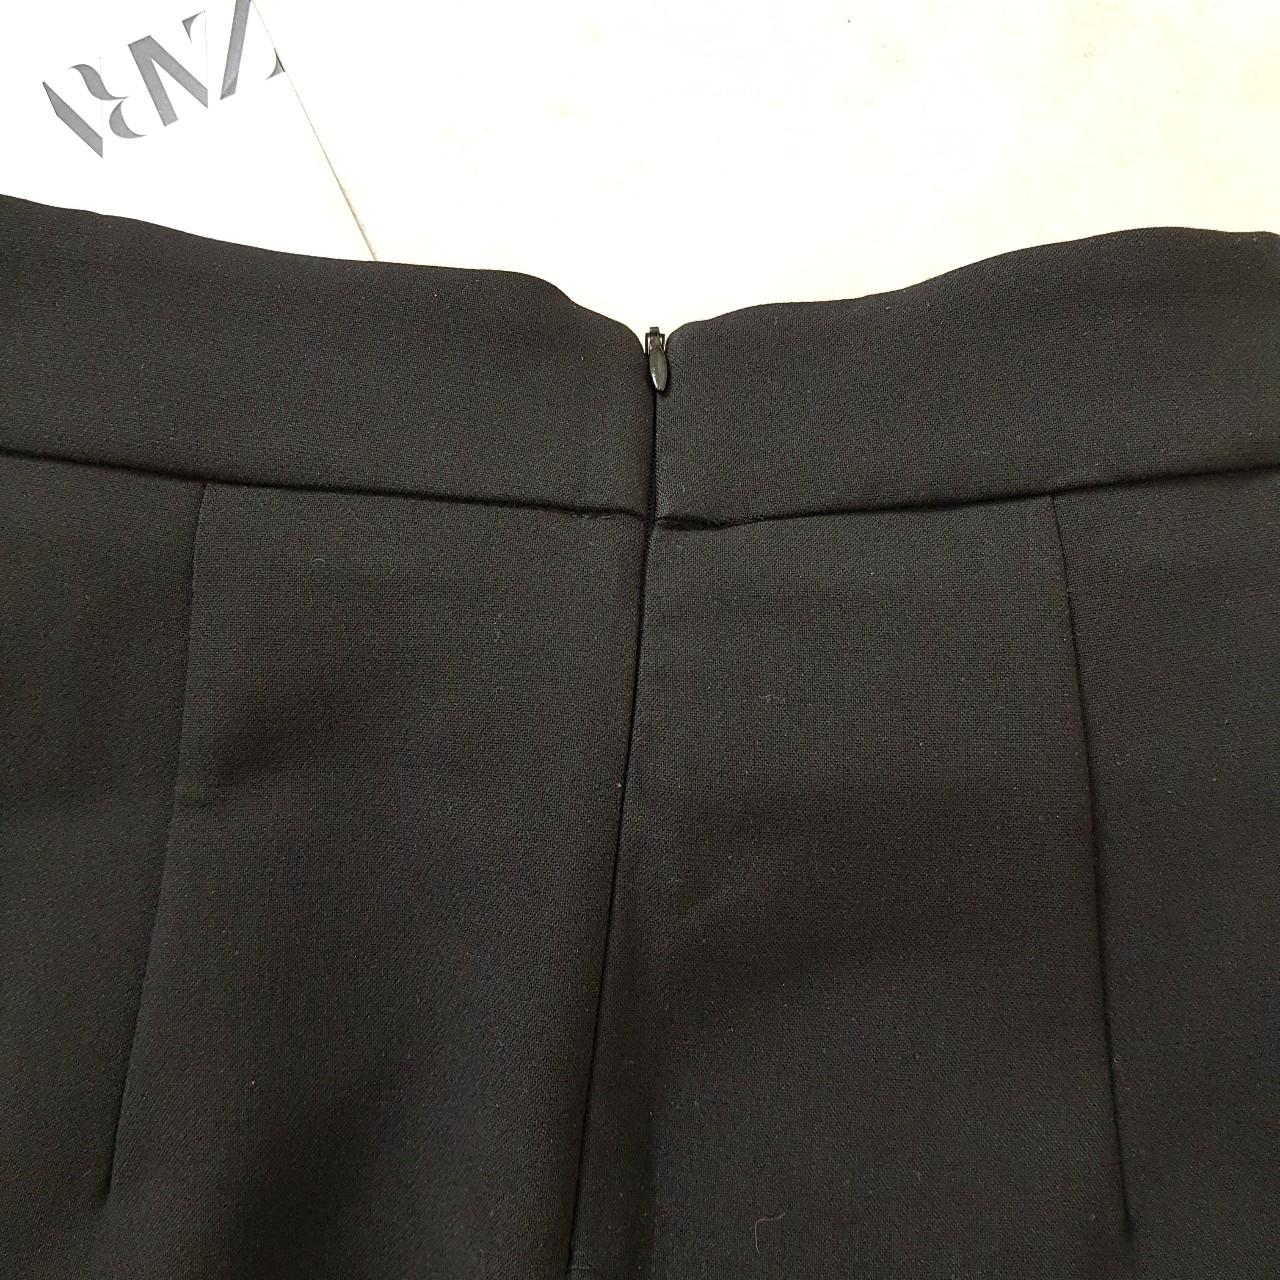 ZARA black knot mini skirt INSTANT BUY IS ON -->... - Depop